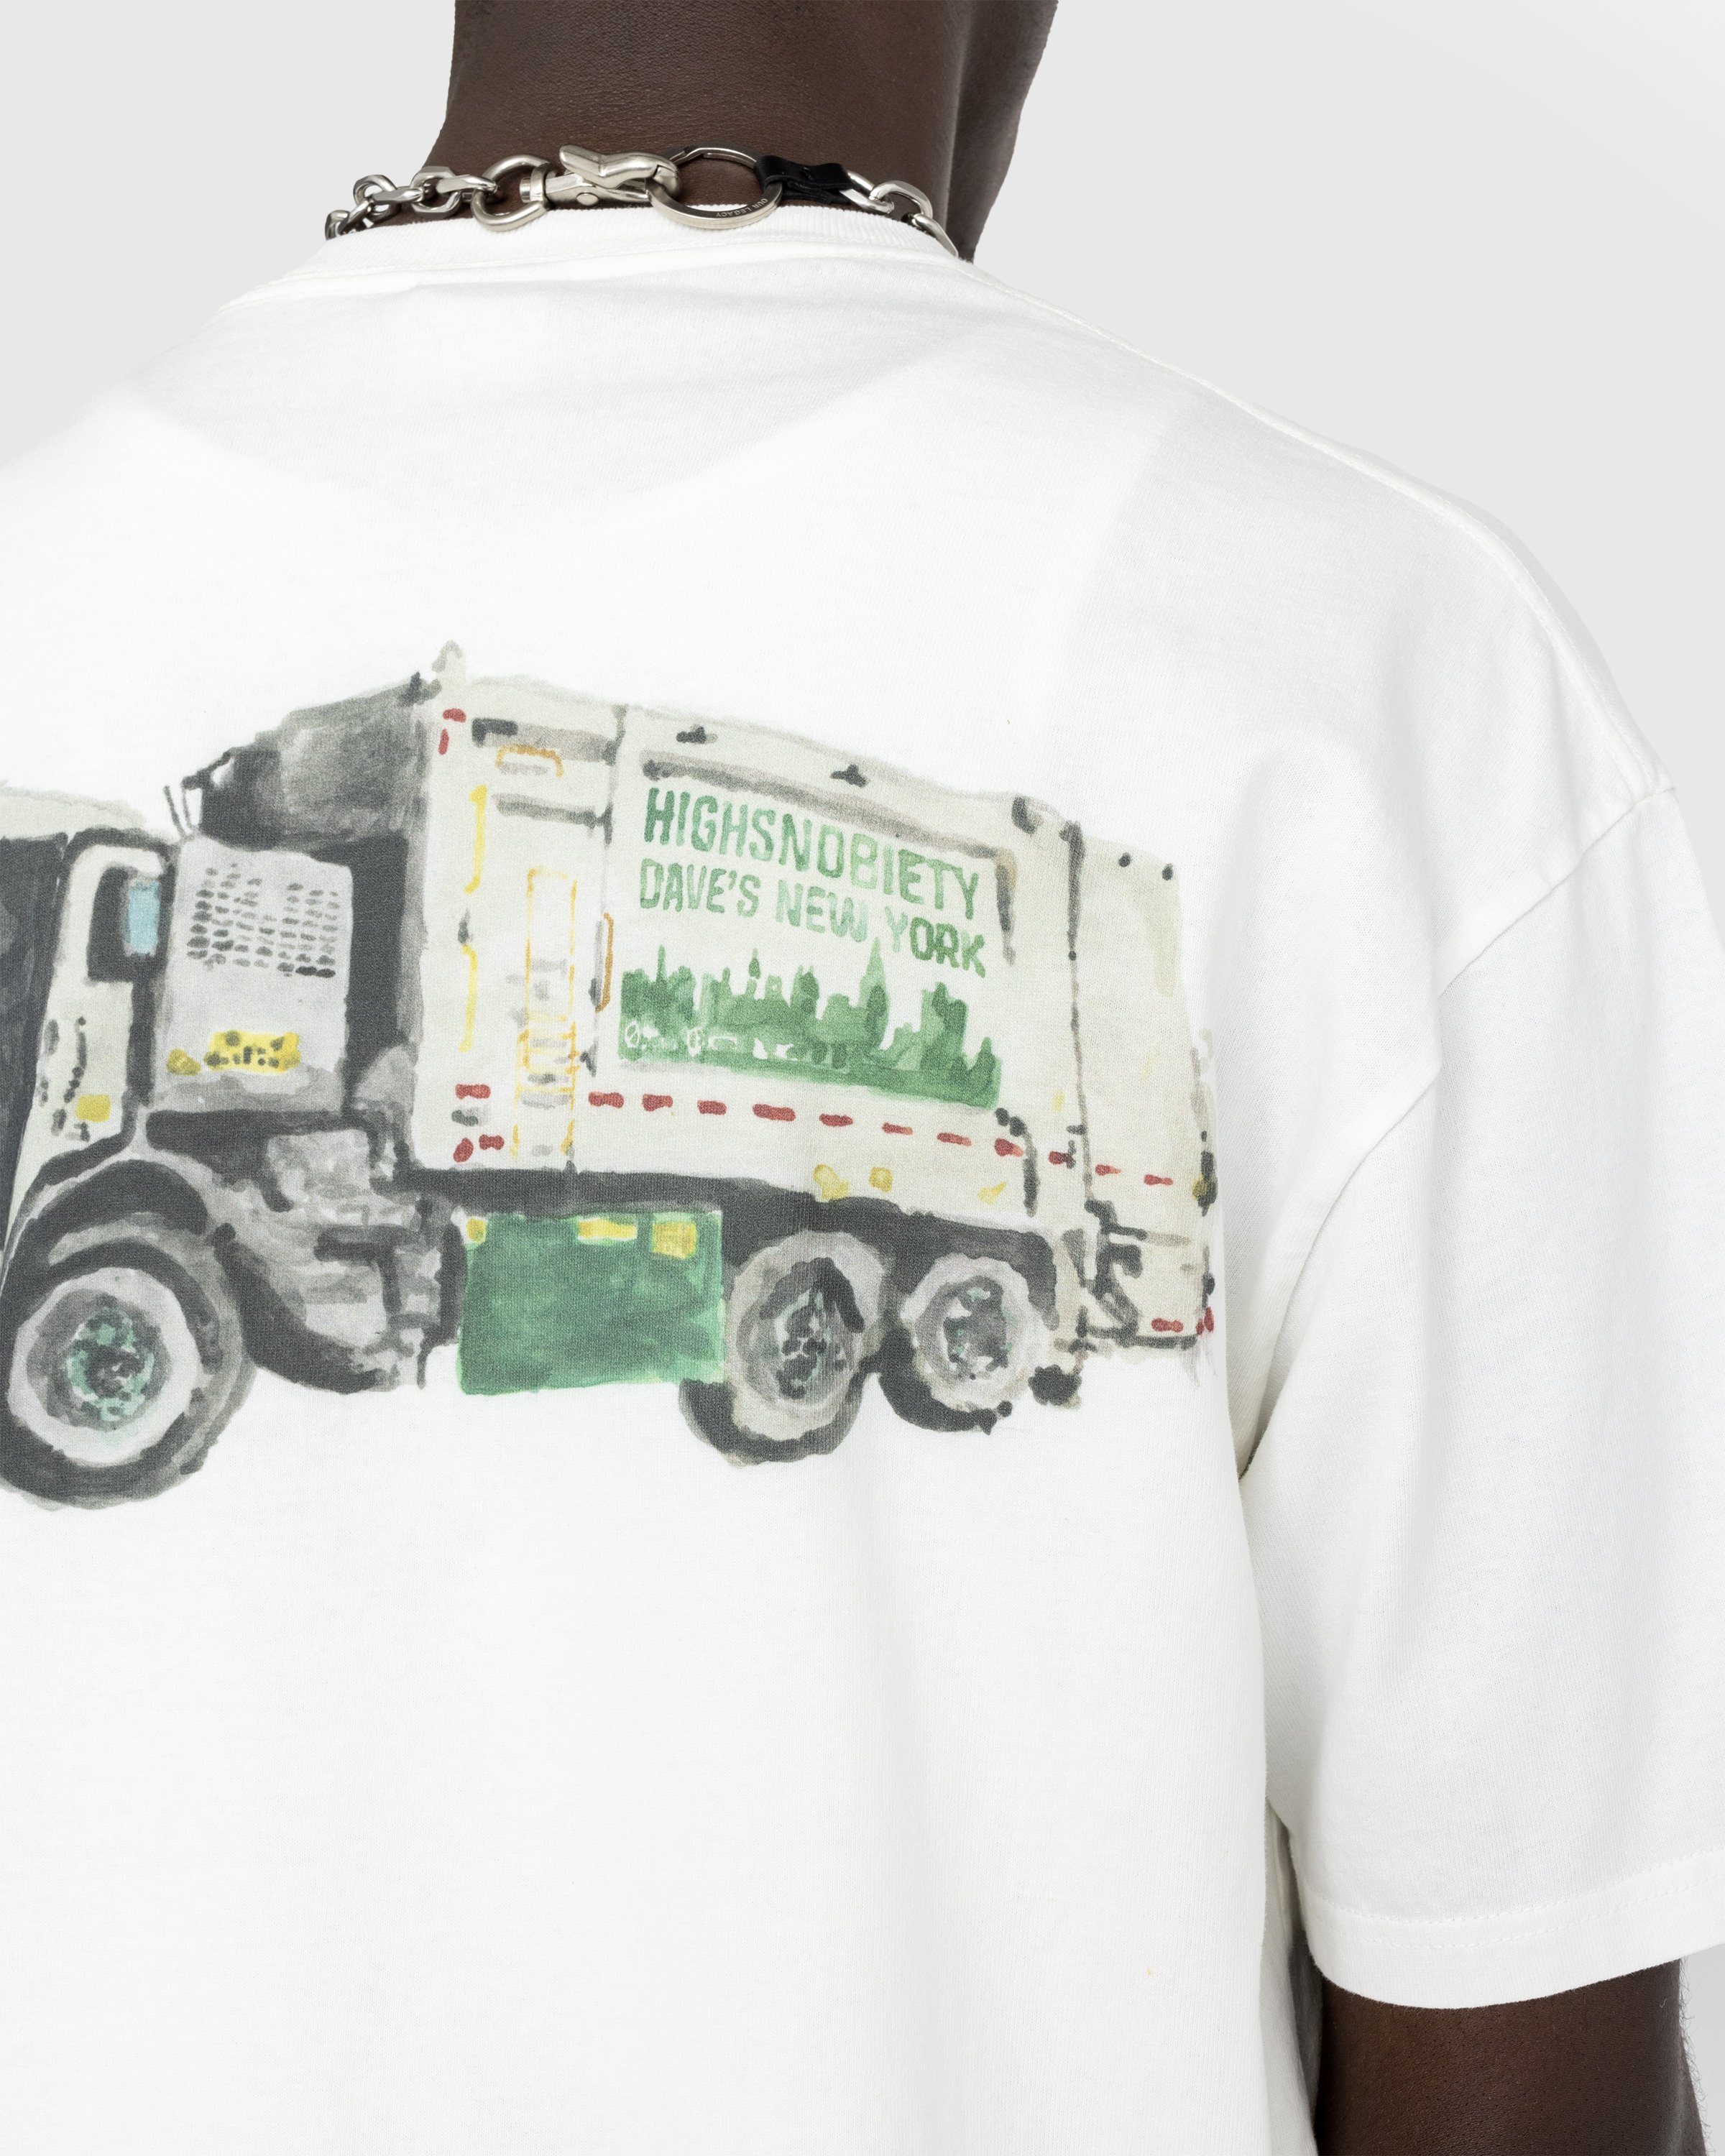 Dave's New York x Highsnobiety - White "Sanitation Truck" T-Shirt - Clothing - White - Image 5